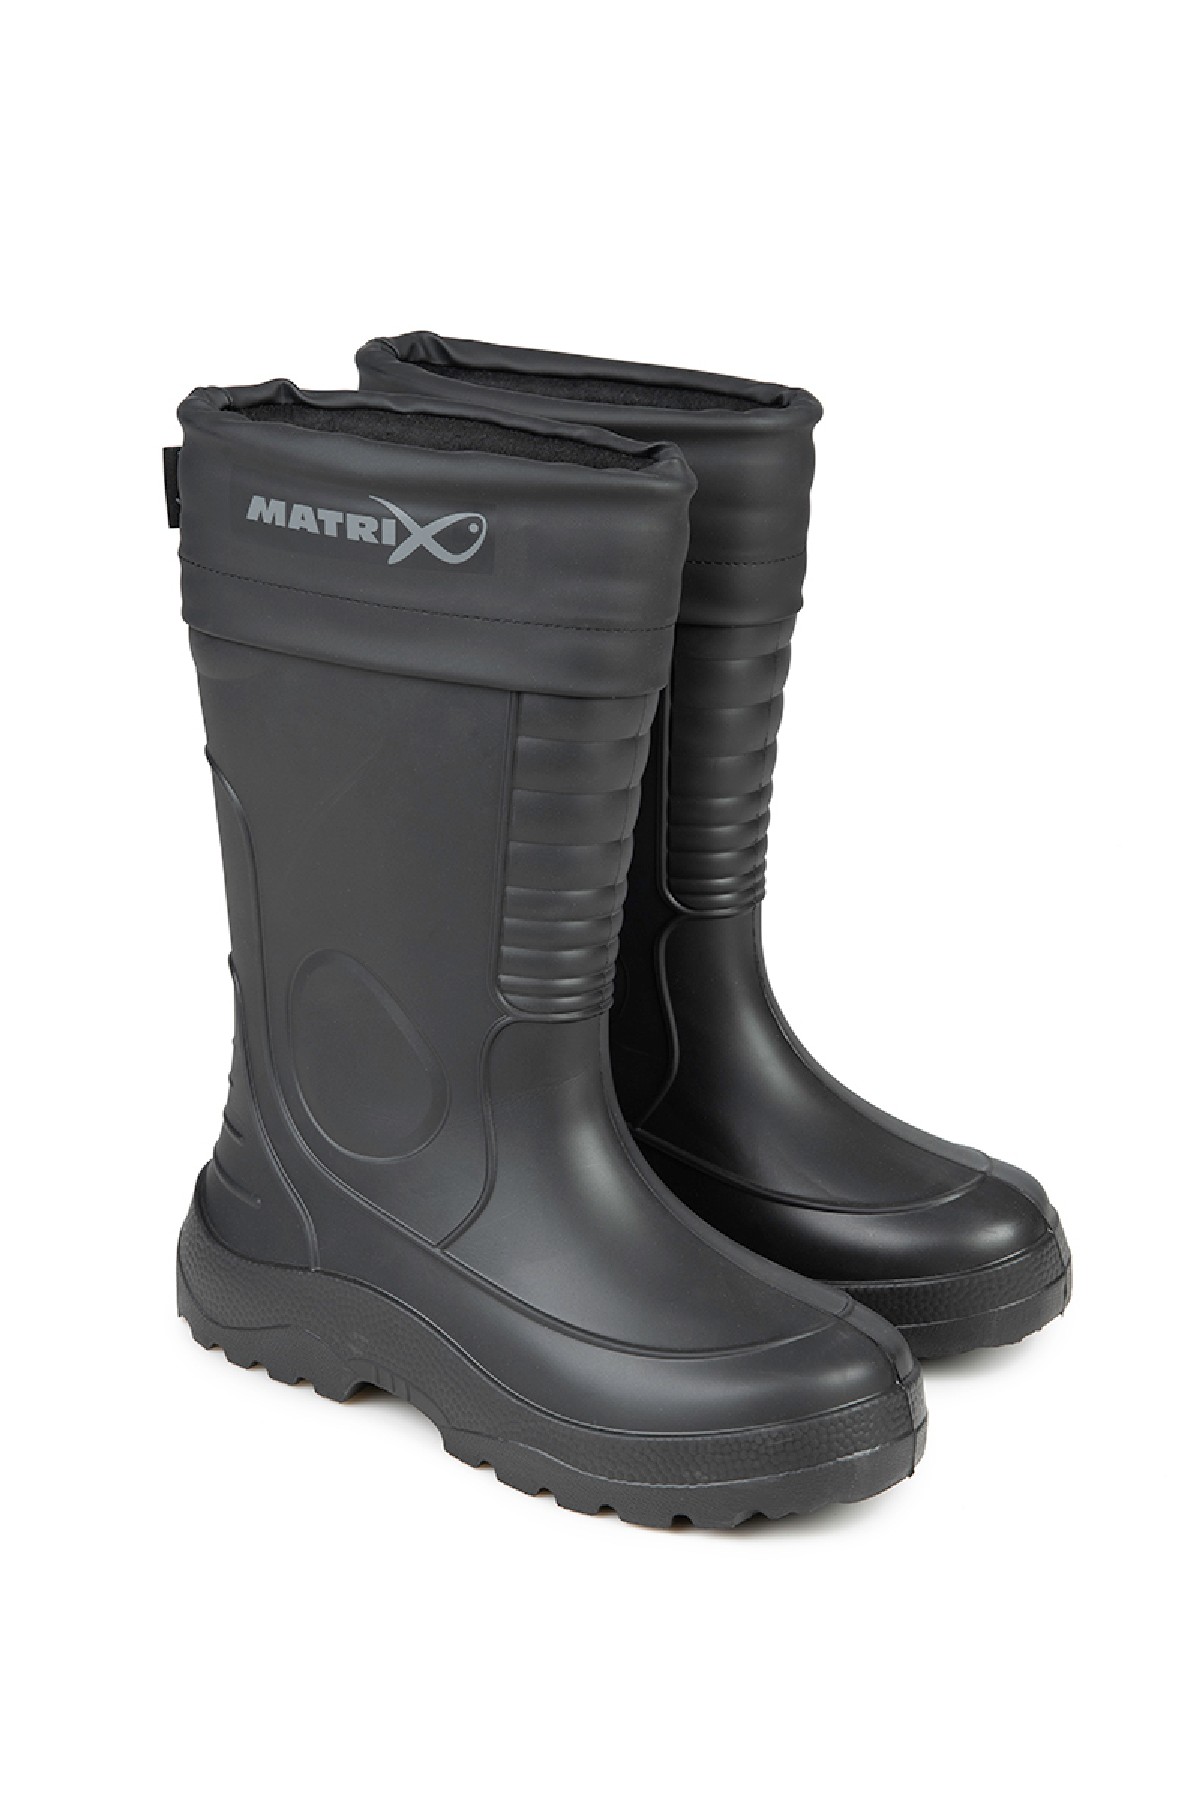 Matrix Thermal Eva Boots 41